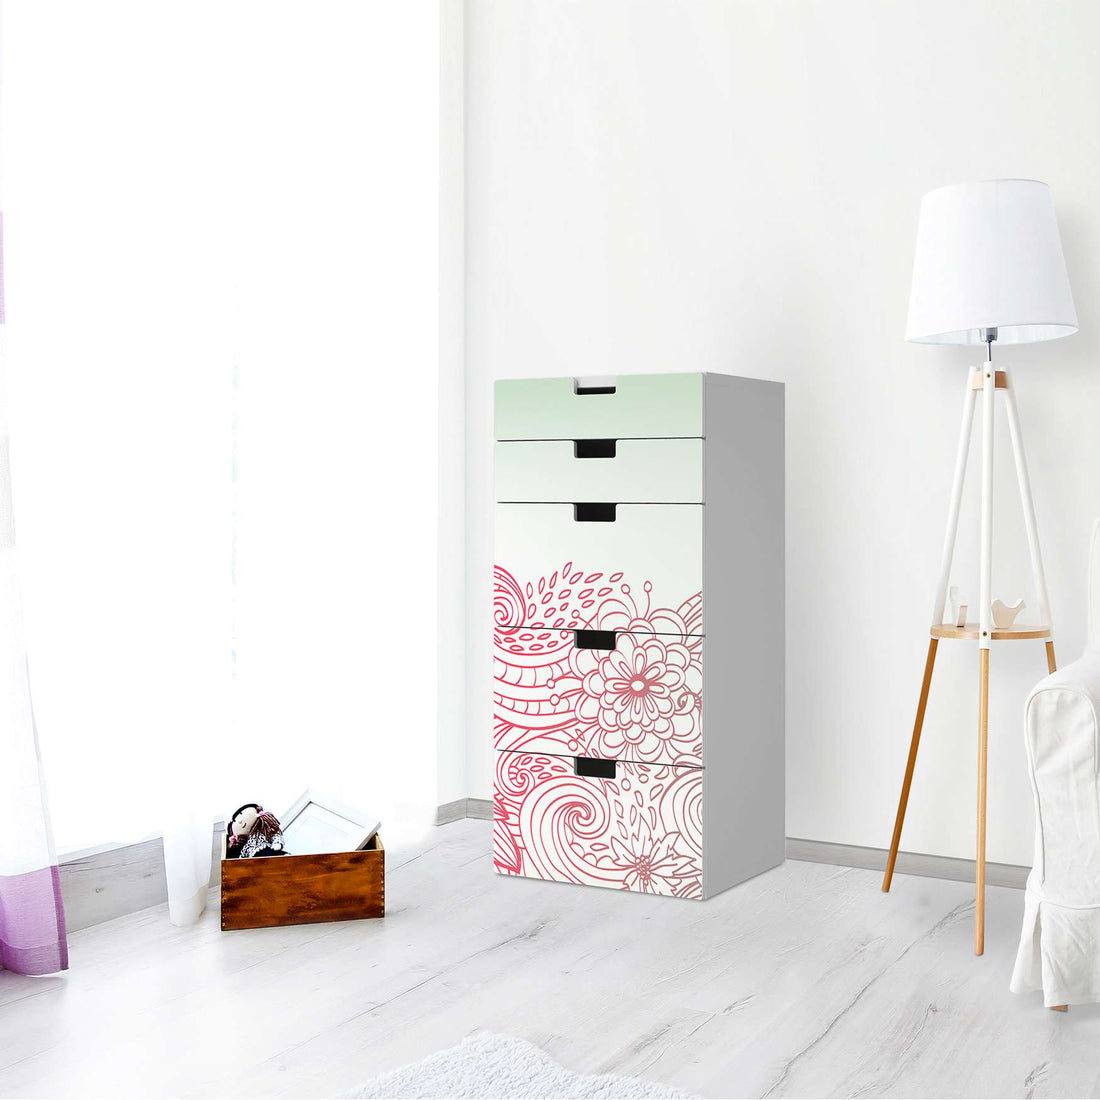 Möbel Klebefolie Floral Doodle - IKEA Stuva Kommode - 5 Schubladen - Wohnzimmer